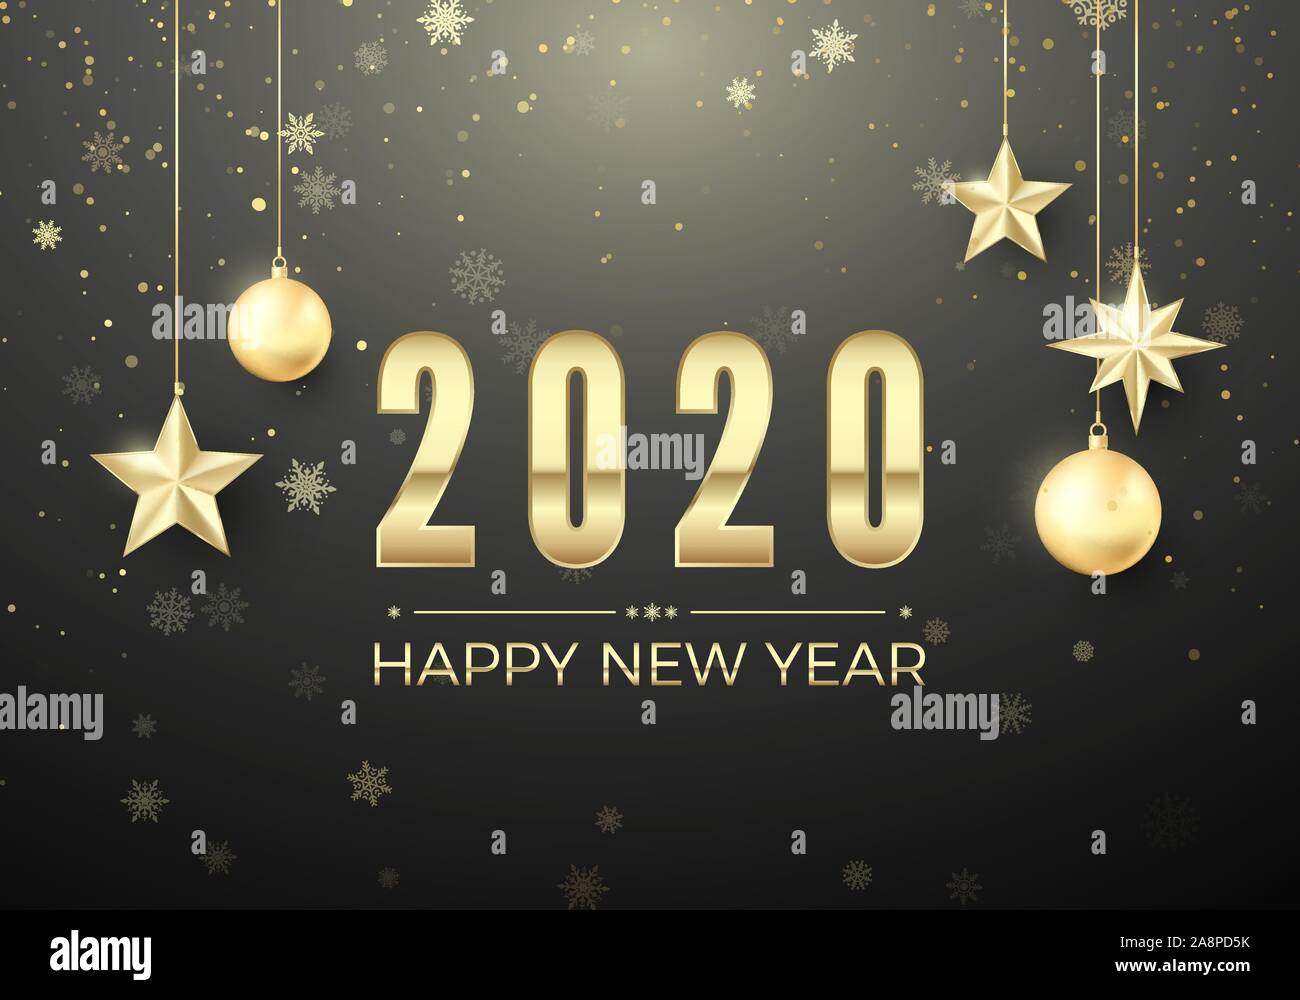 Golden Christmas Ball und Sterne. Neues Jahr Dekoration Hintergrund. Gold Schneeflocken und Begrüßungstext. Frohes Neues Jahr 2020. Vektor Stock Vektor